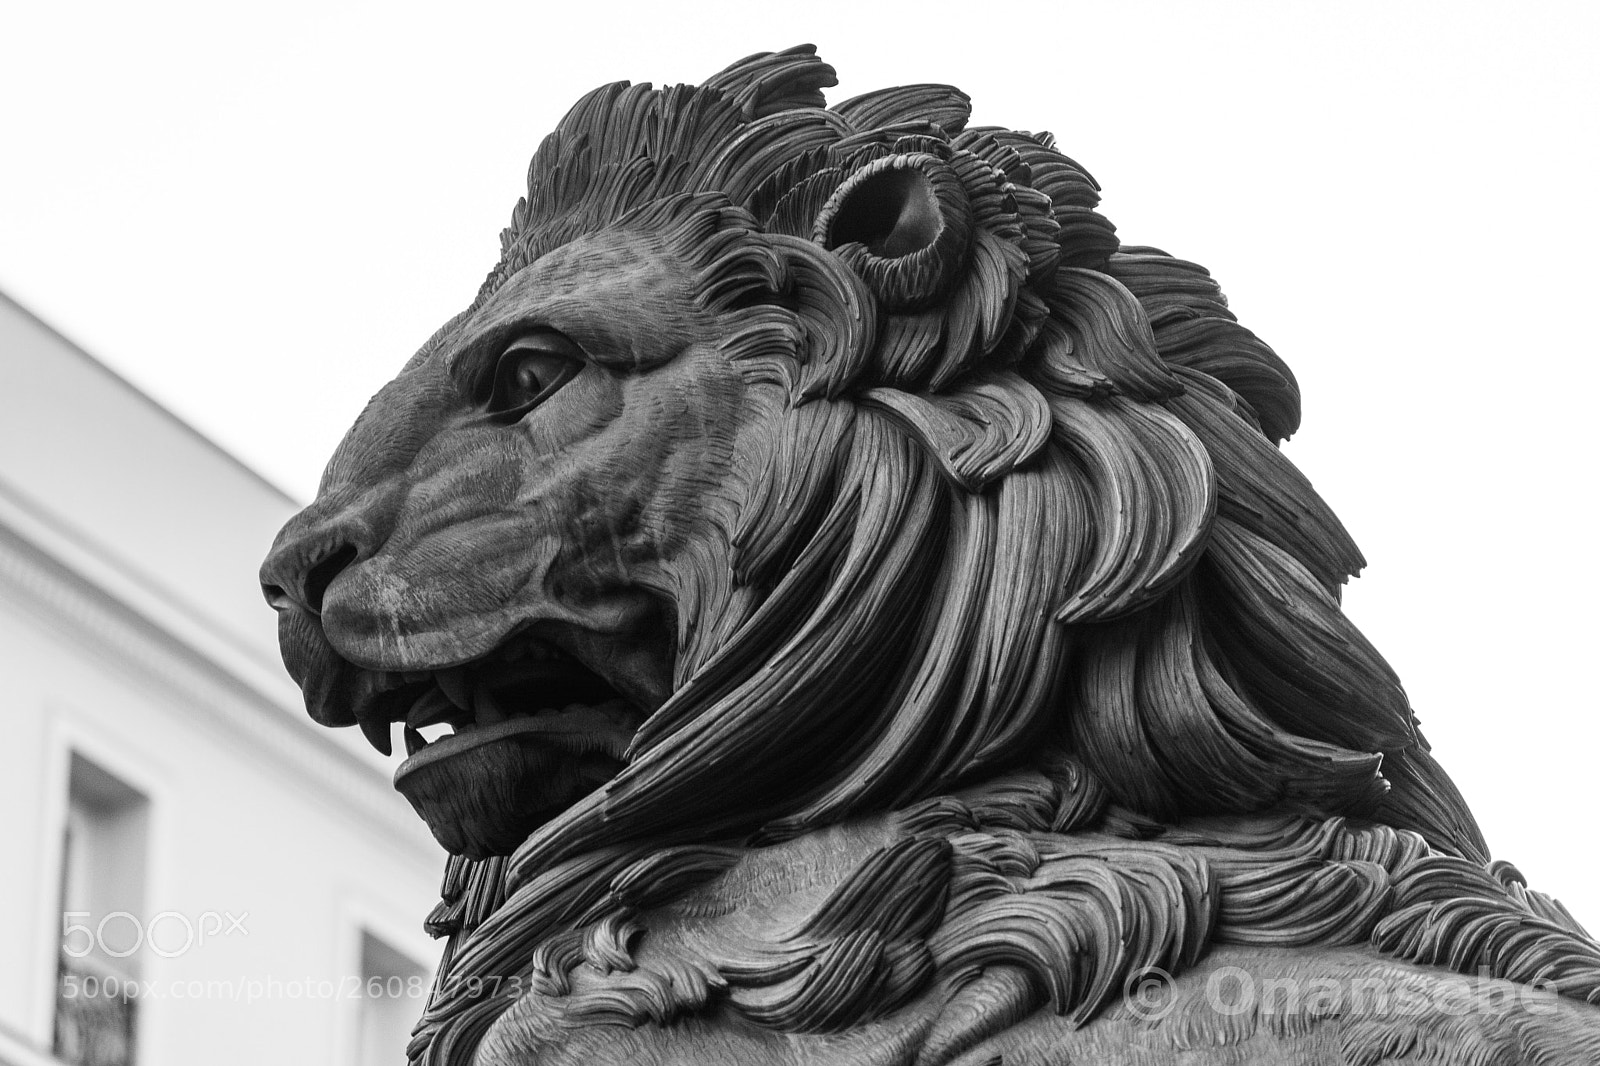 Nikon D5200 sample photo. Cabeza de león photography